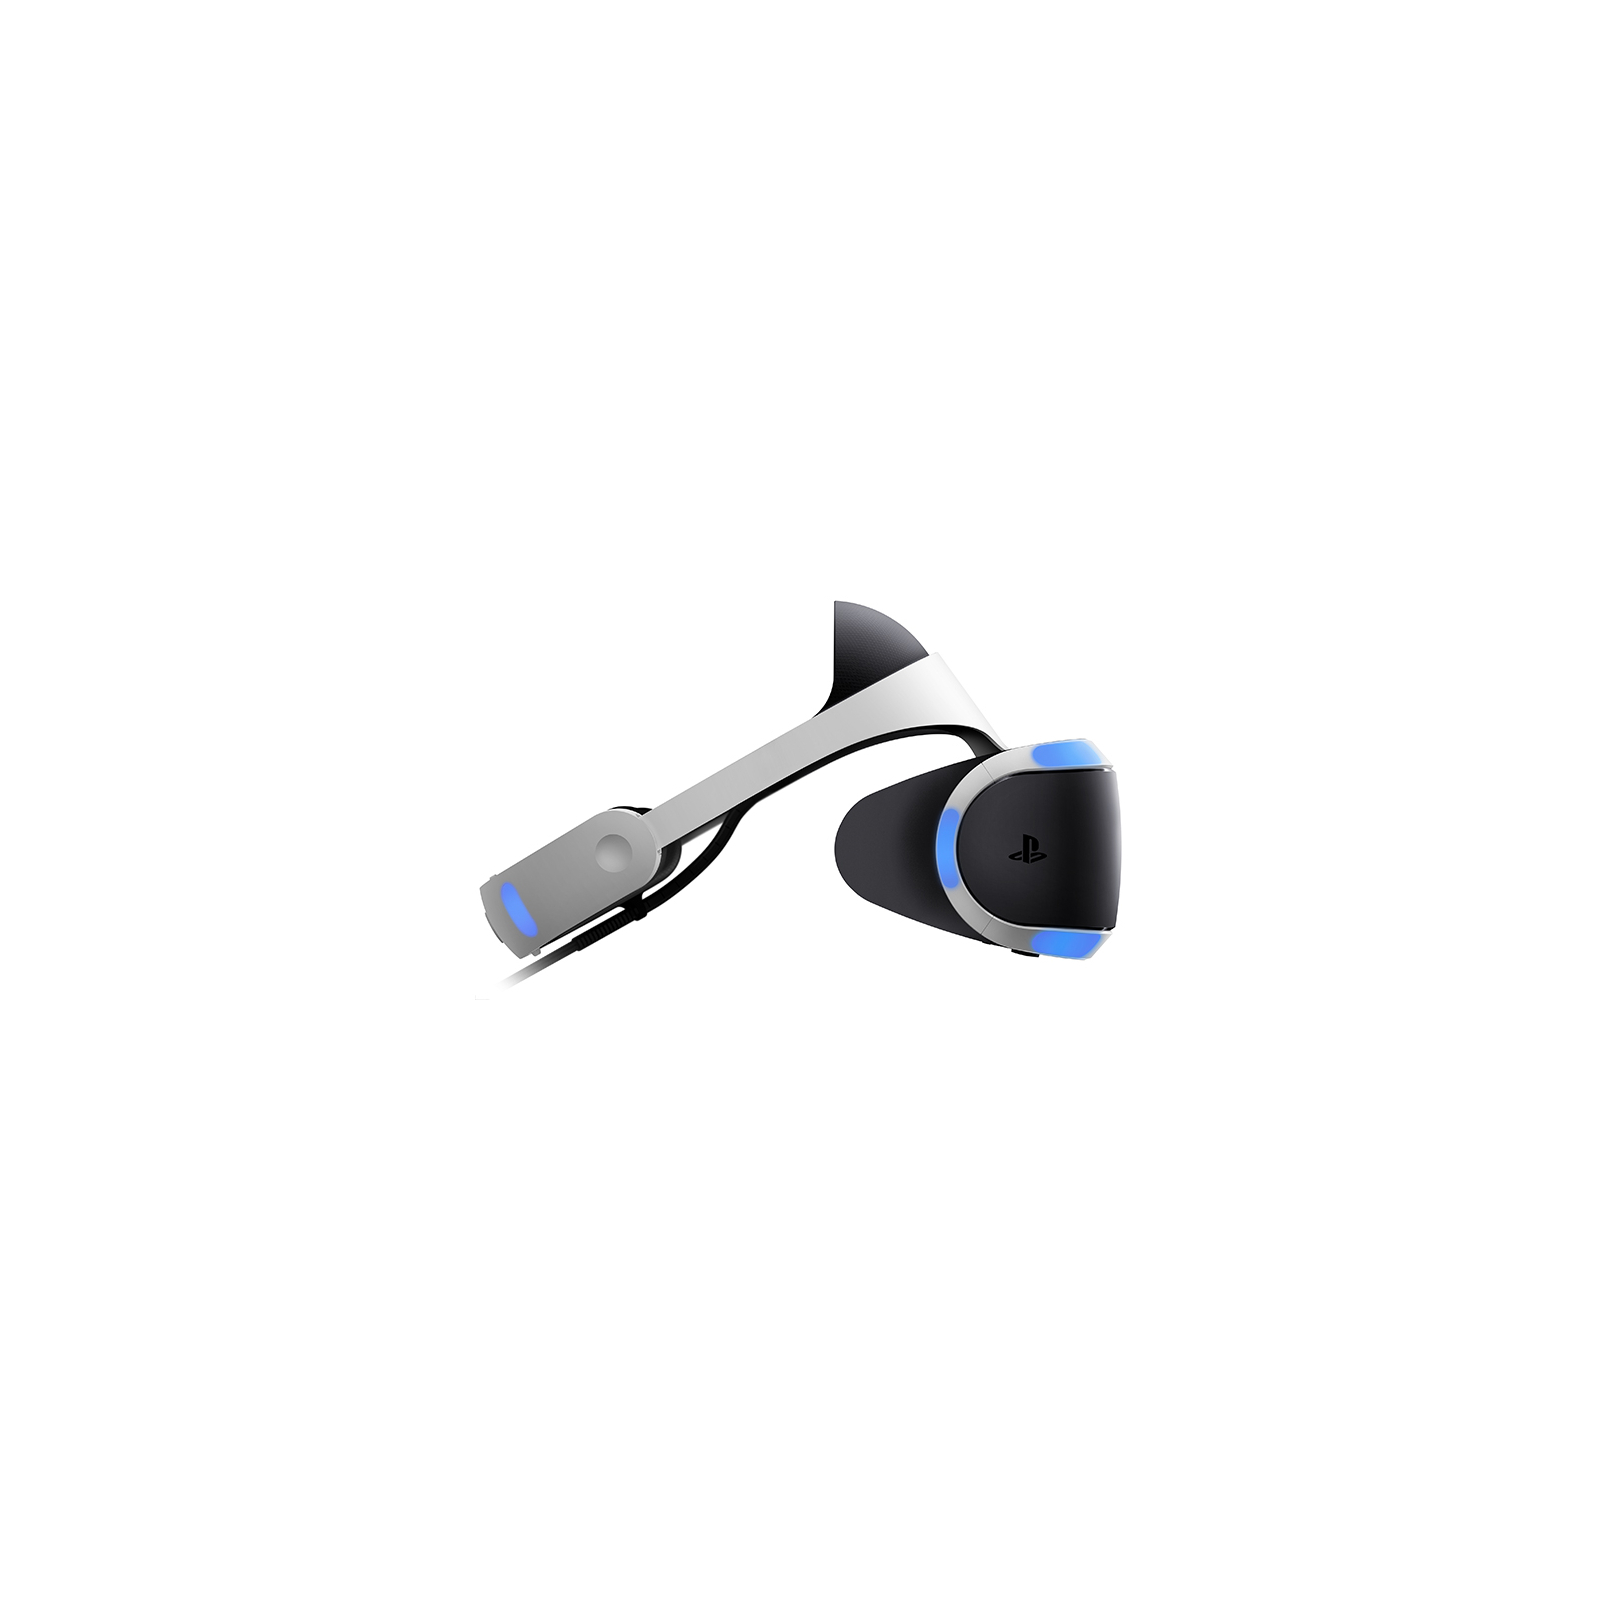 Игровая консоль Sony PlayStation 4 Pro 1TB + PlayStation VR изображение 10